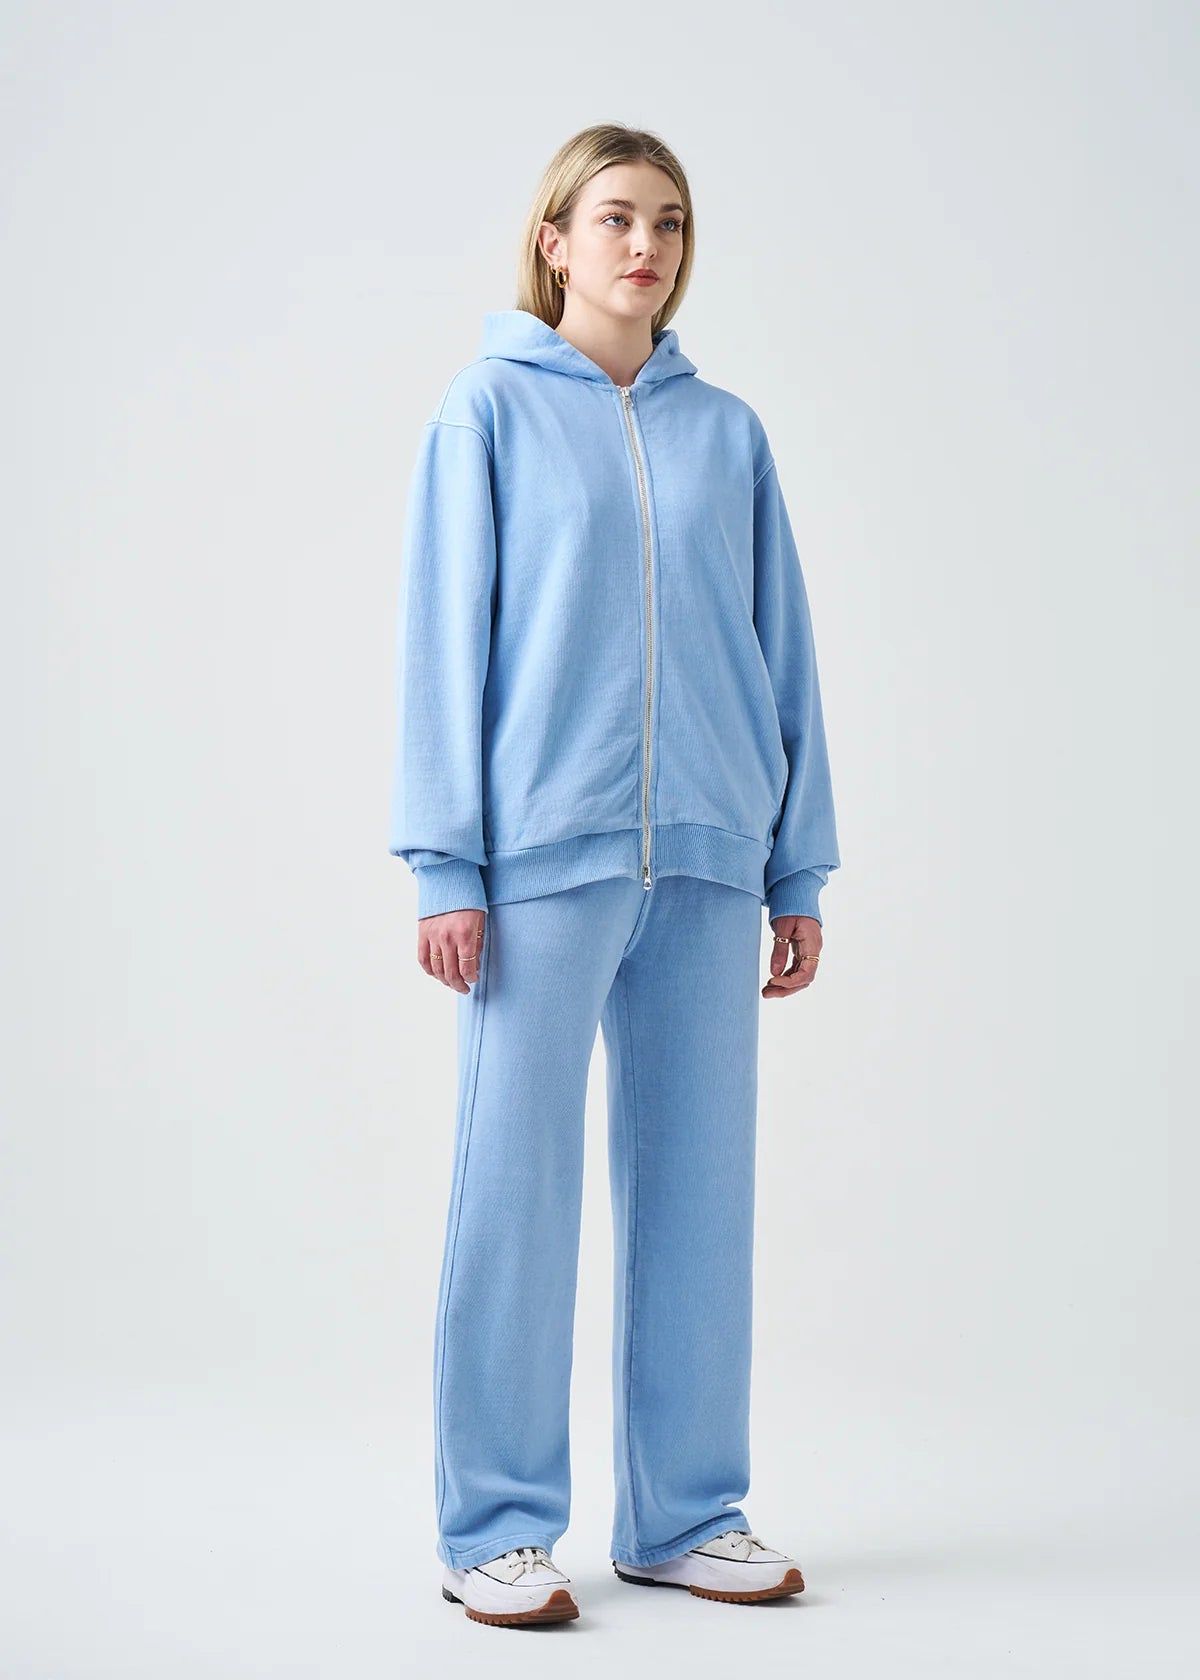 Pigment Blue 14 Ounce Garment Dye Fleece Hooded Sweatsuit